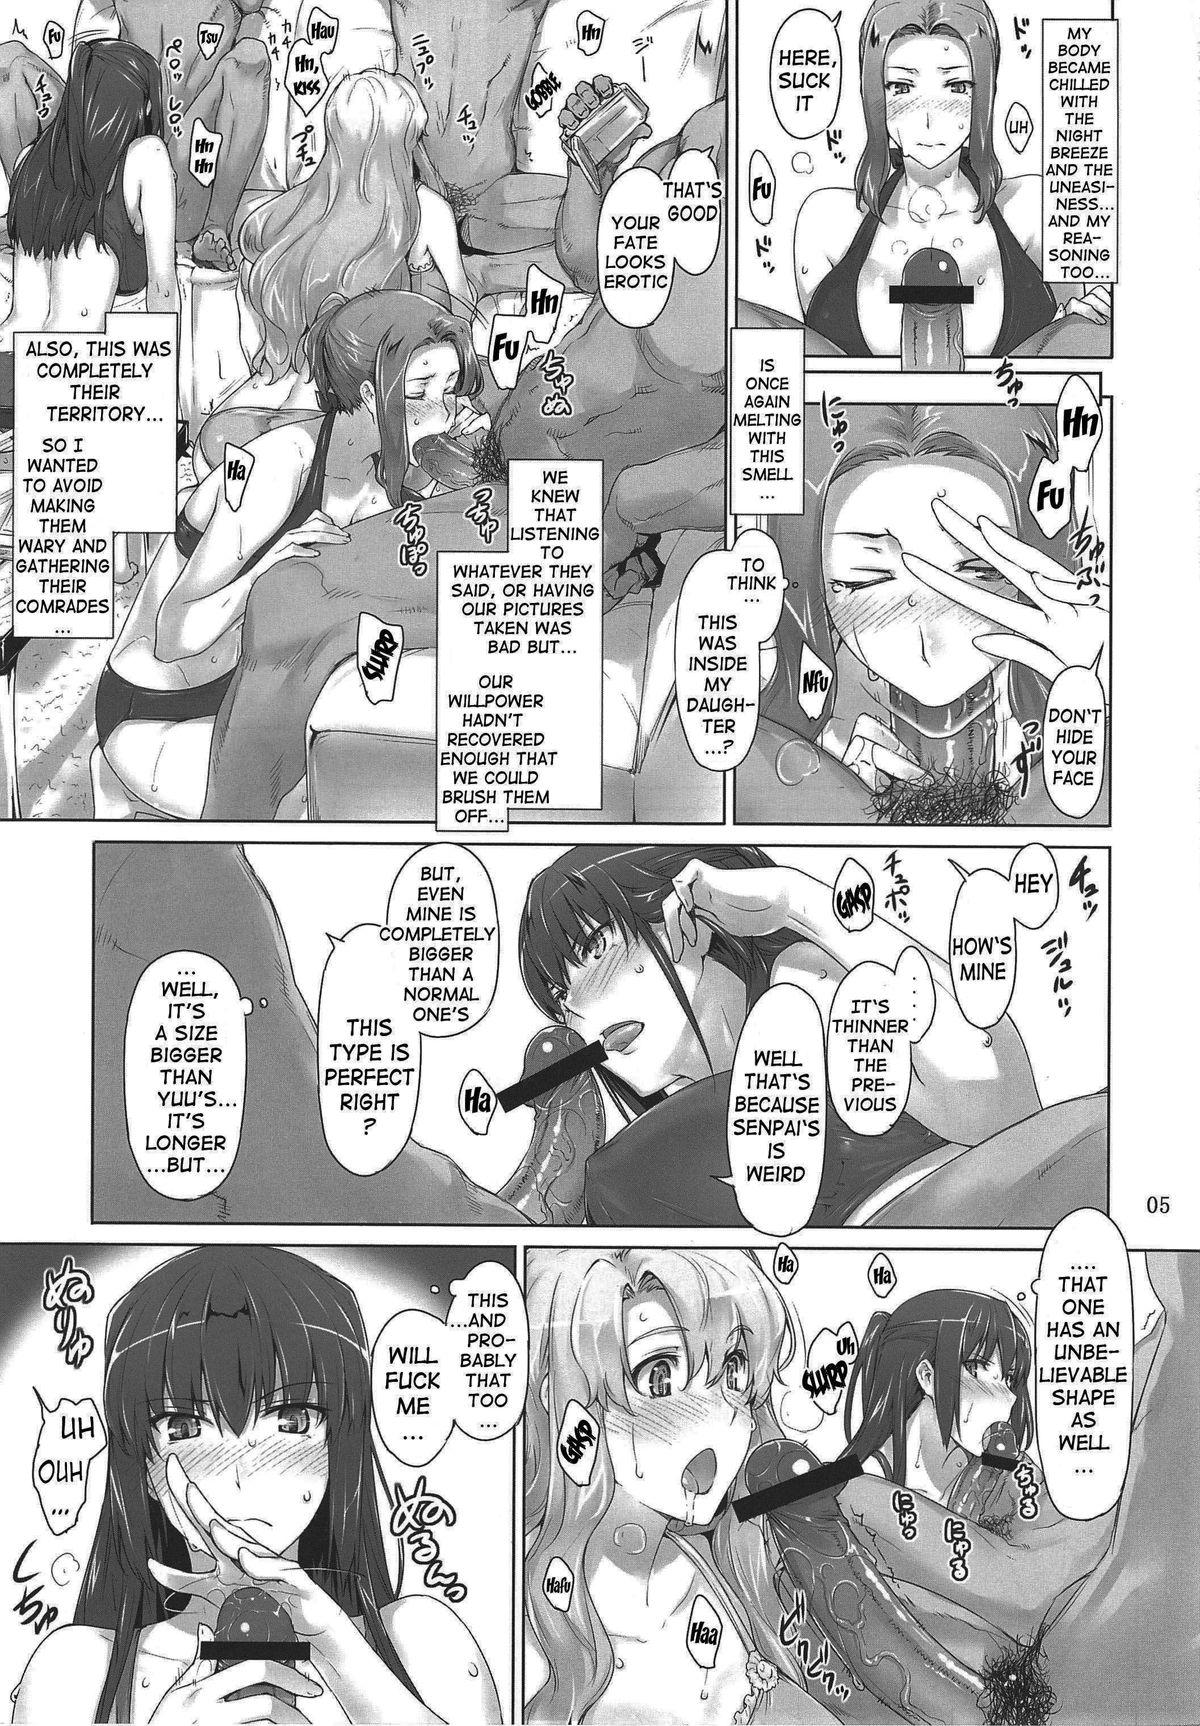 Sucking Dick Mtsp - Tachibana-san's Circumstabces WIth a Man 3 Lesbos - Page 4